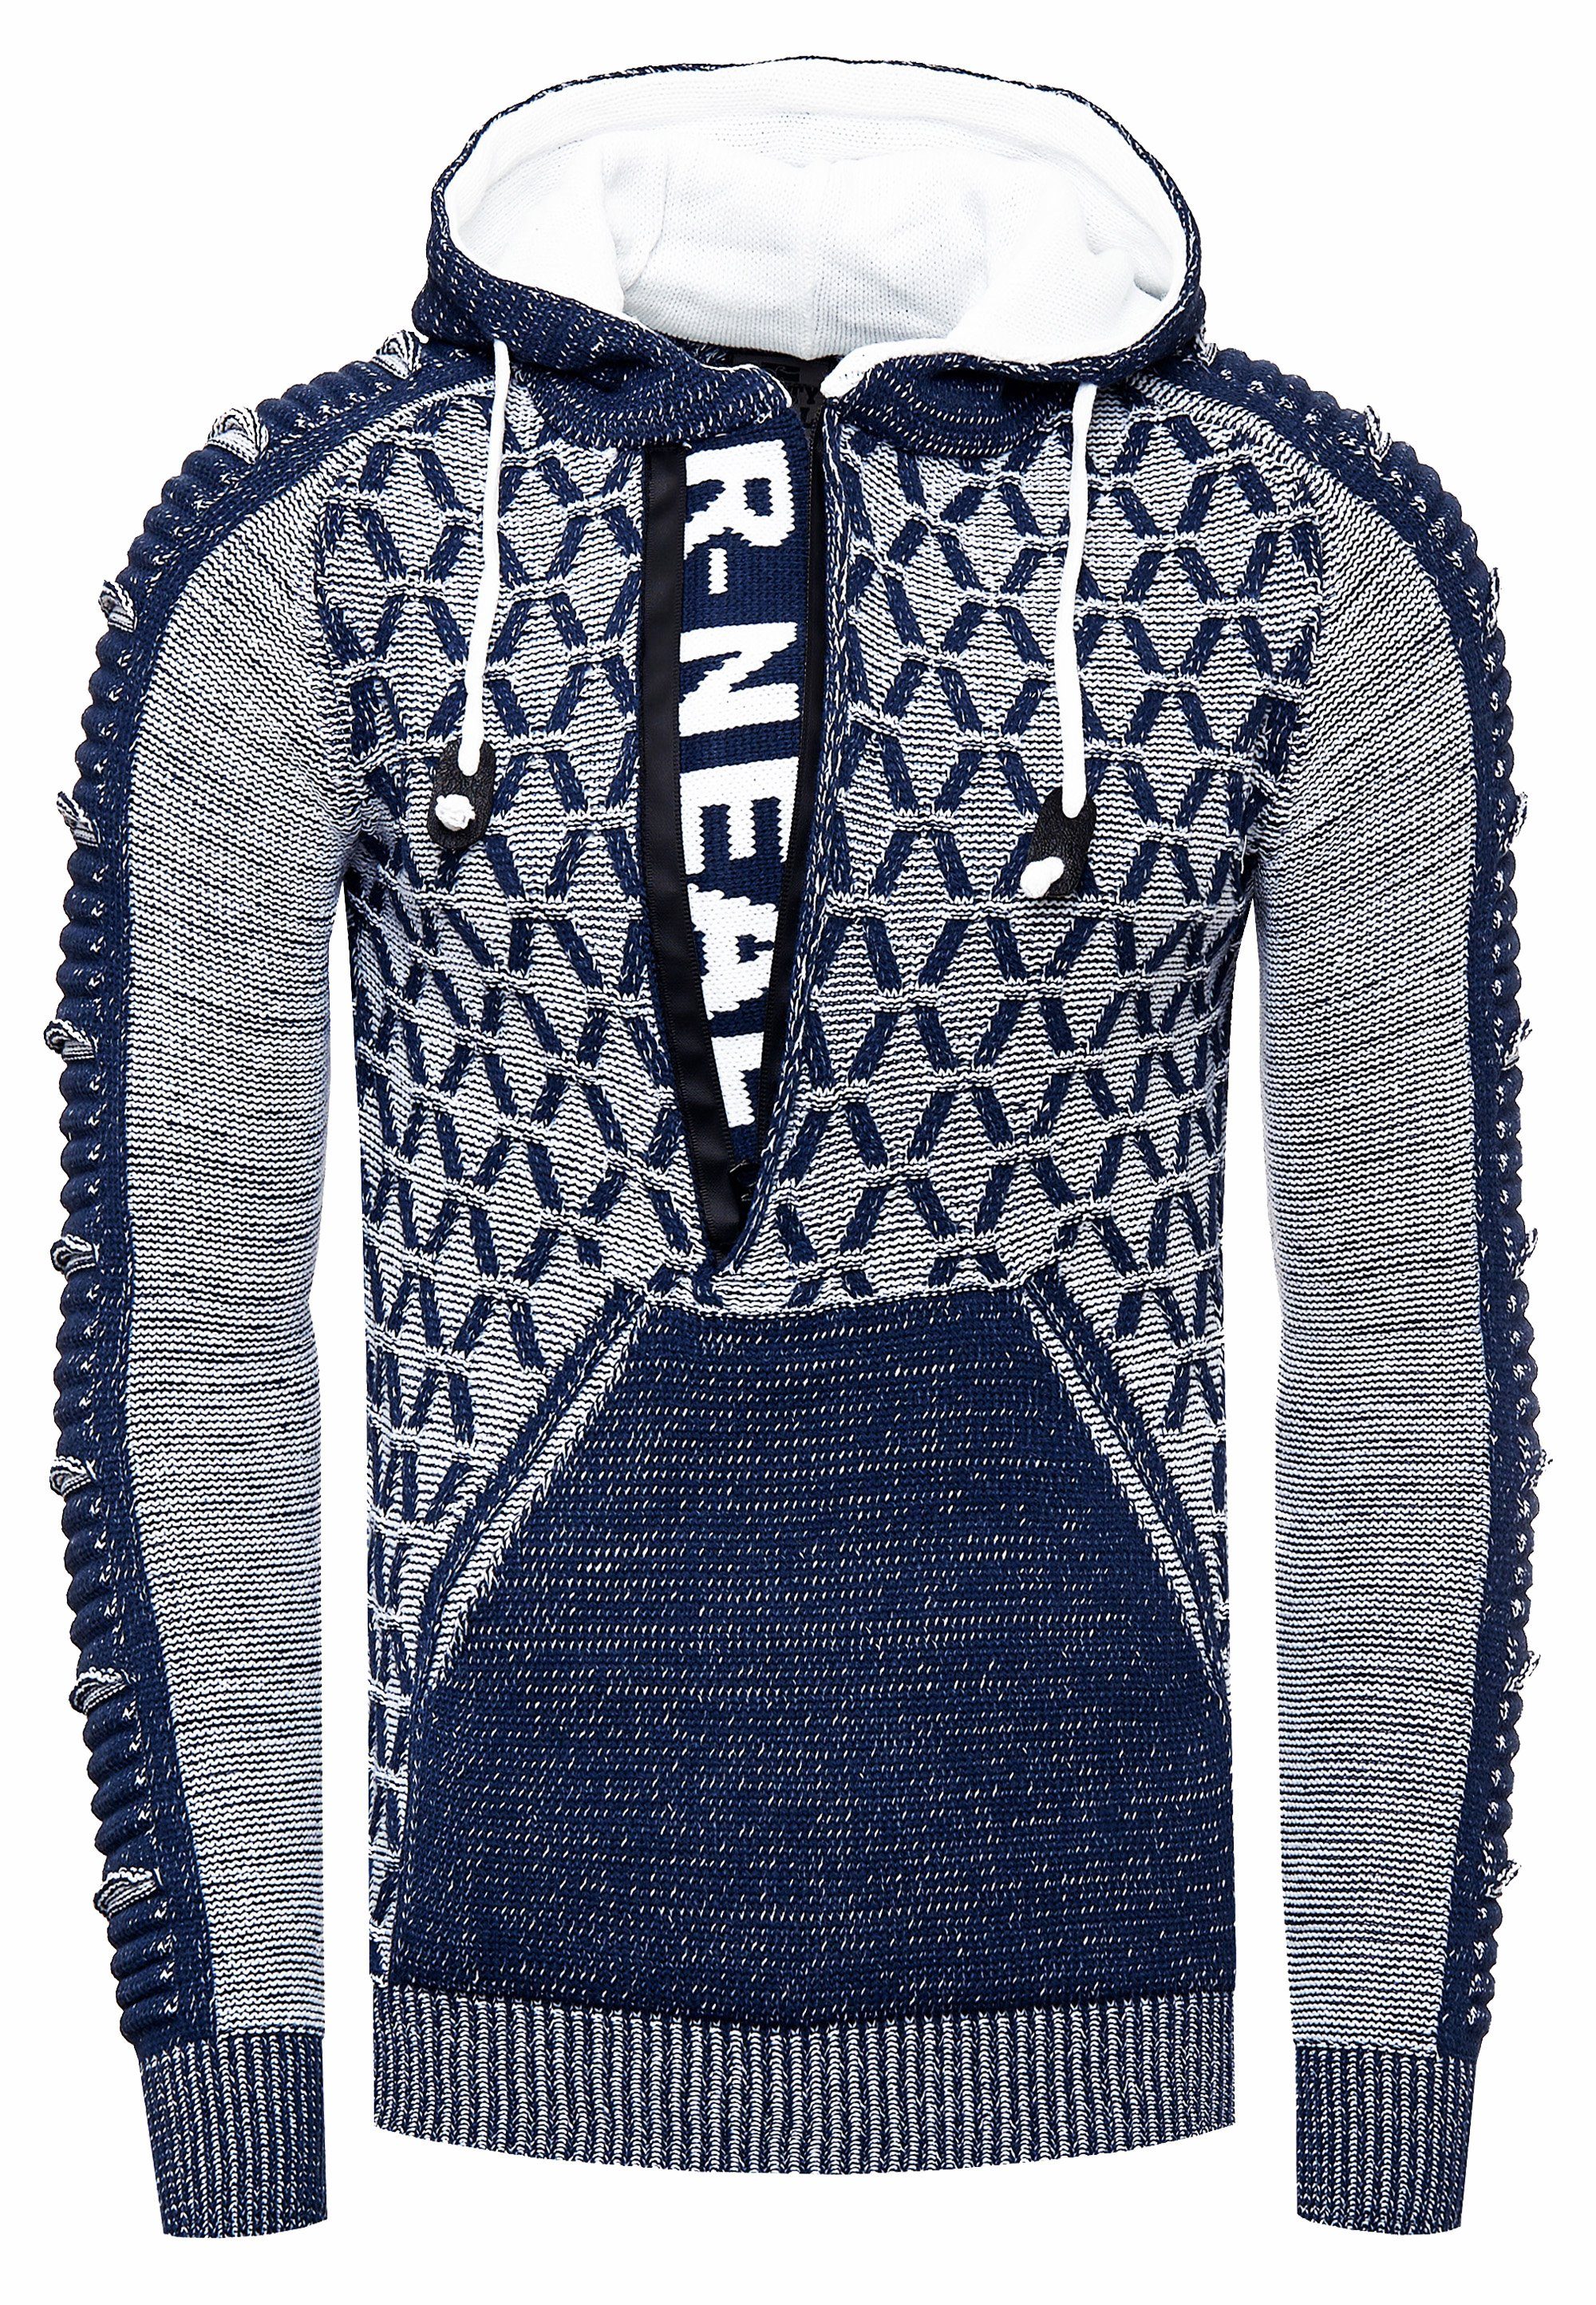 Rusty Neal Kapuzensweatshirt in blau-weiß ausgefallenem Design